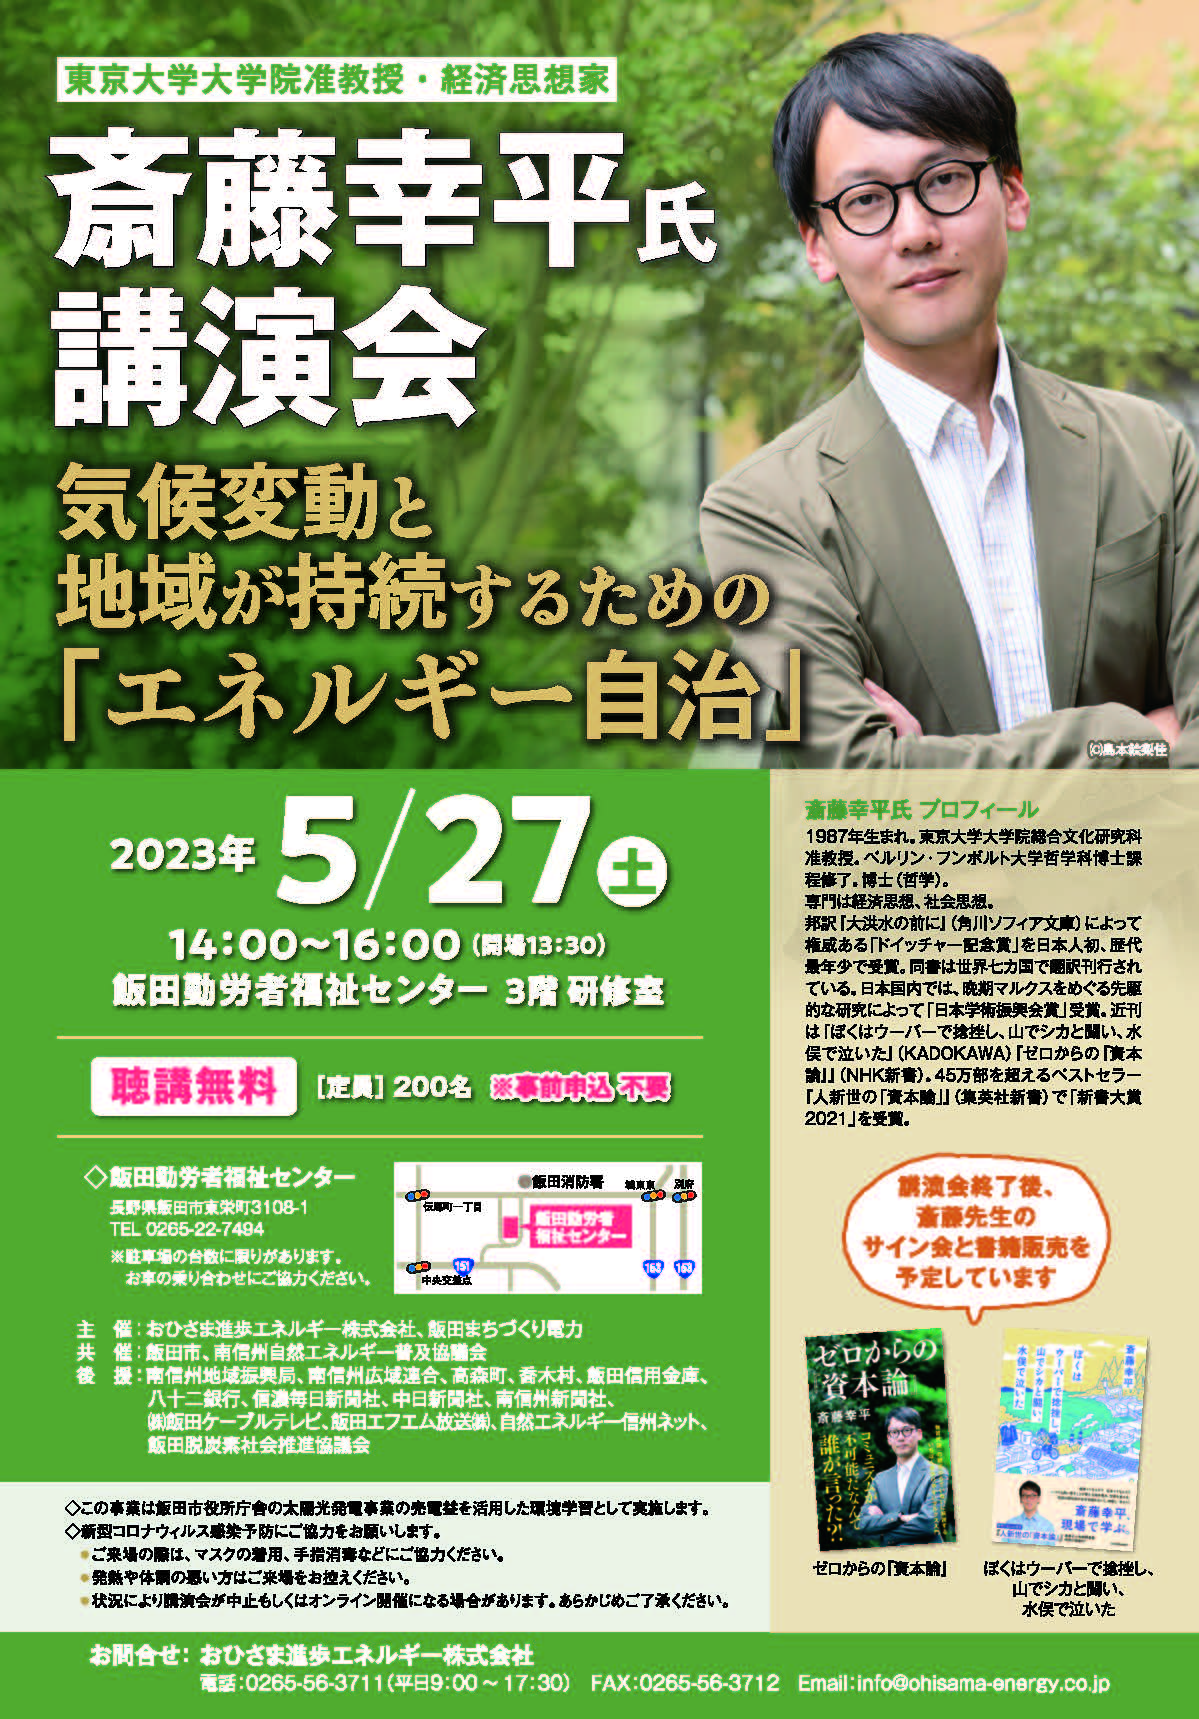 【5/27開催】斎藤幸平氏講演会『気候変動と地域が持続するための「エネルギー自治」』